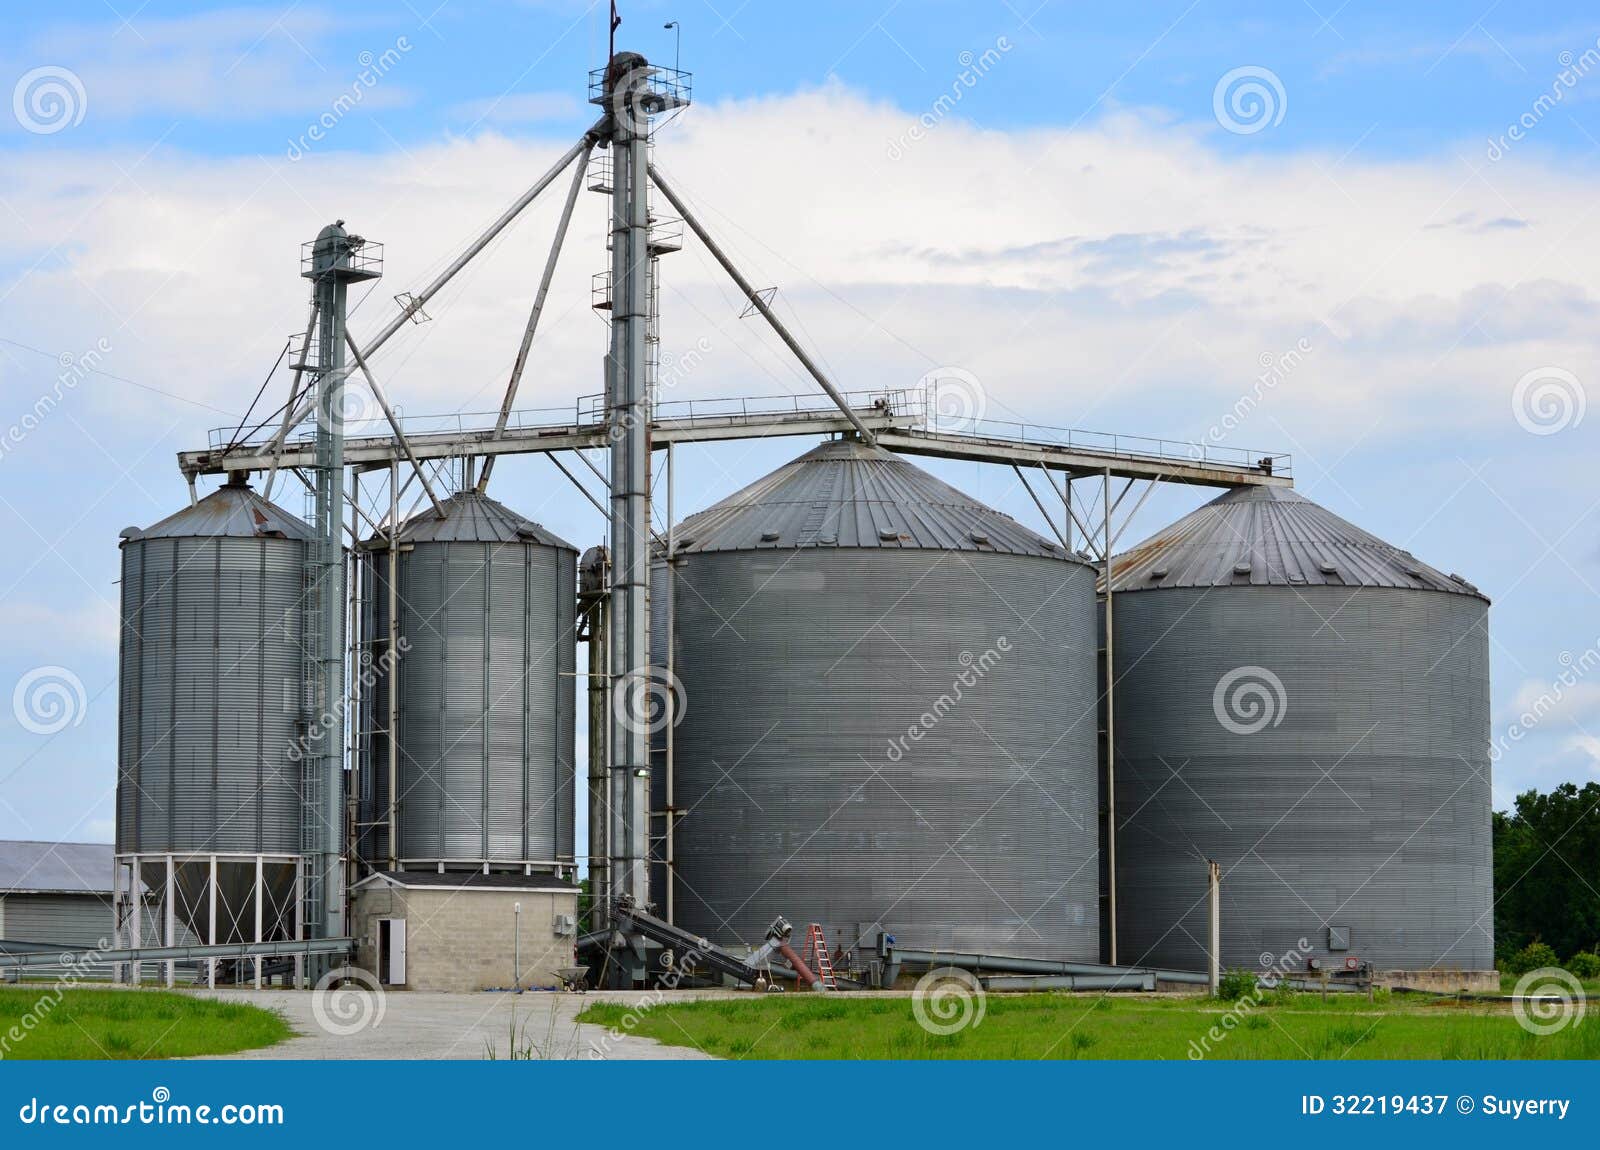 steel grain industrial silo